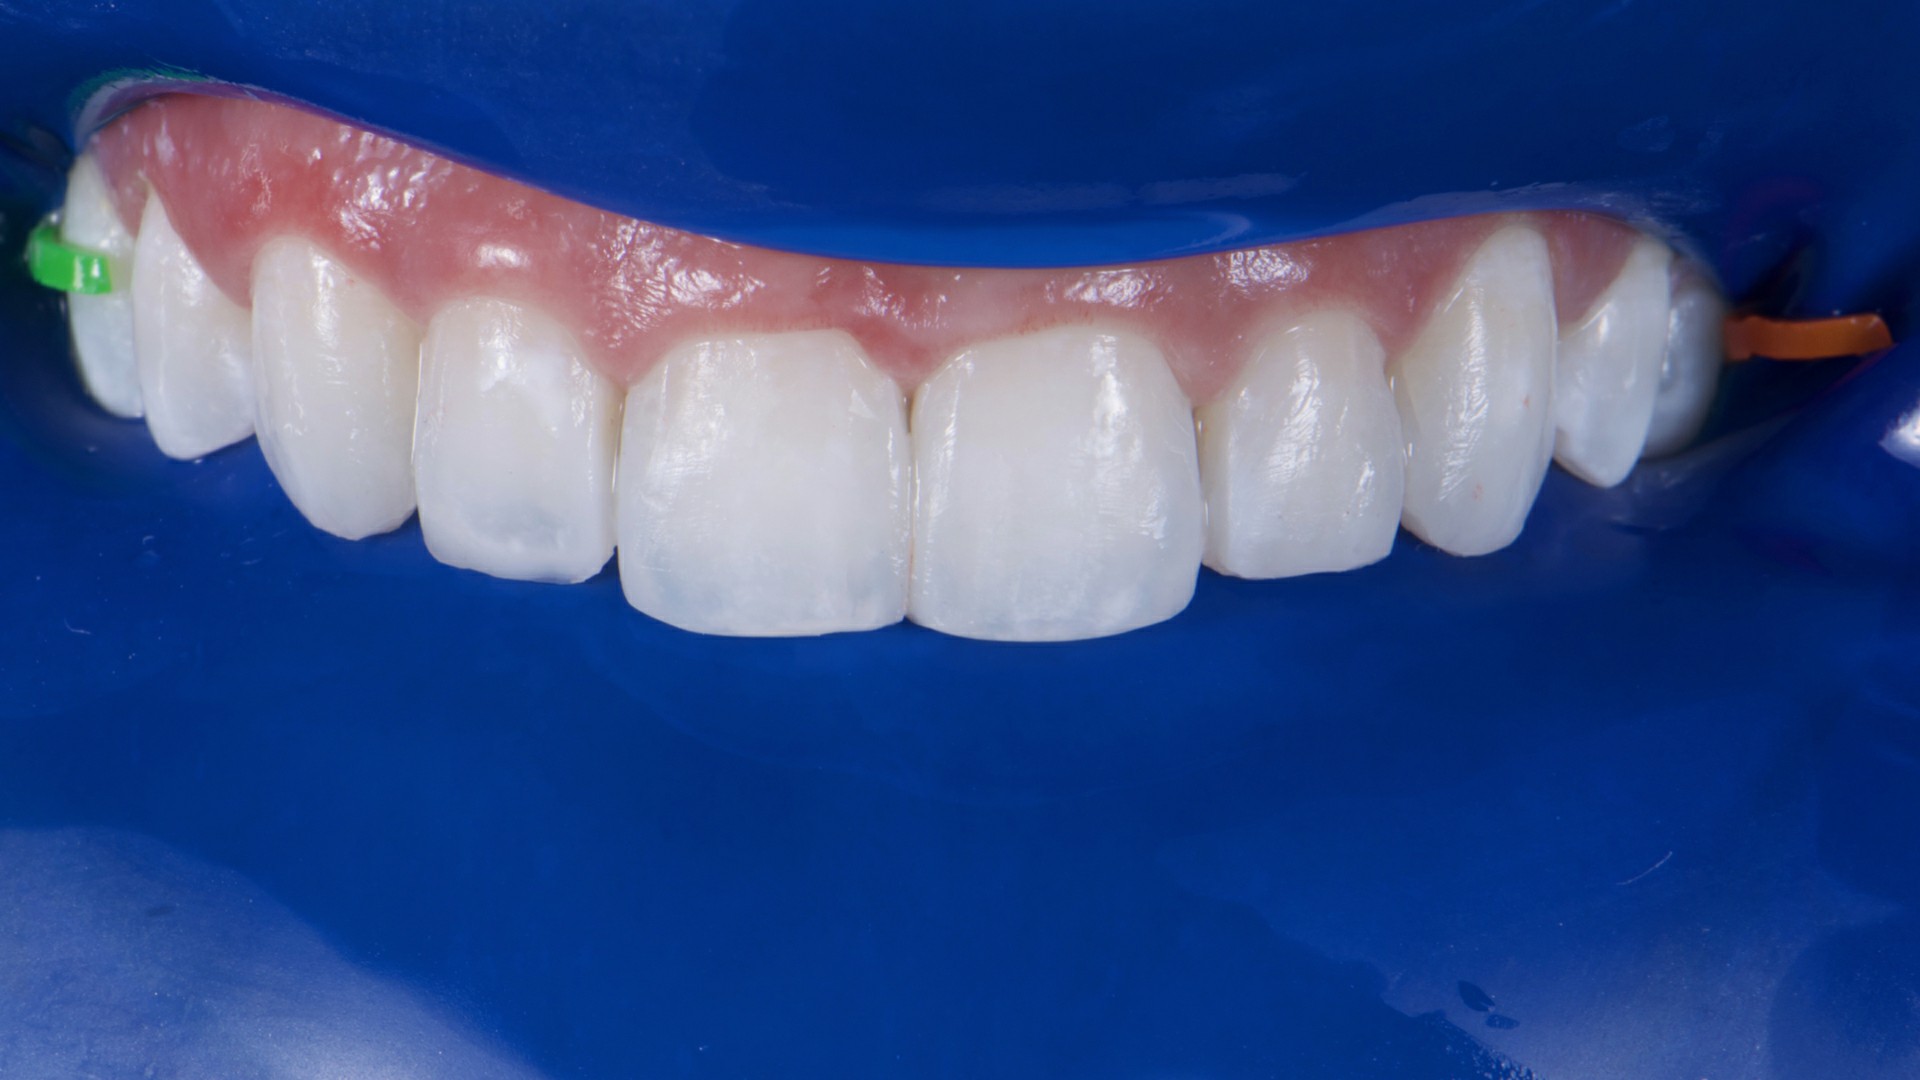 Fig.17: Vista aproximada de los contornos dentales restablecidos.